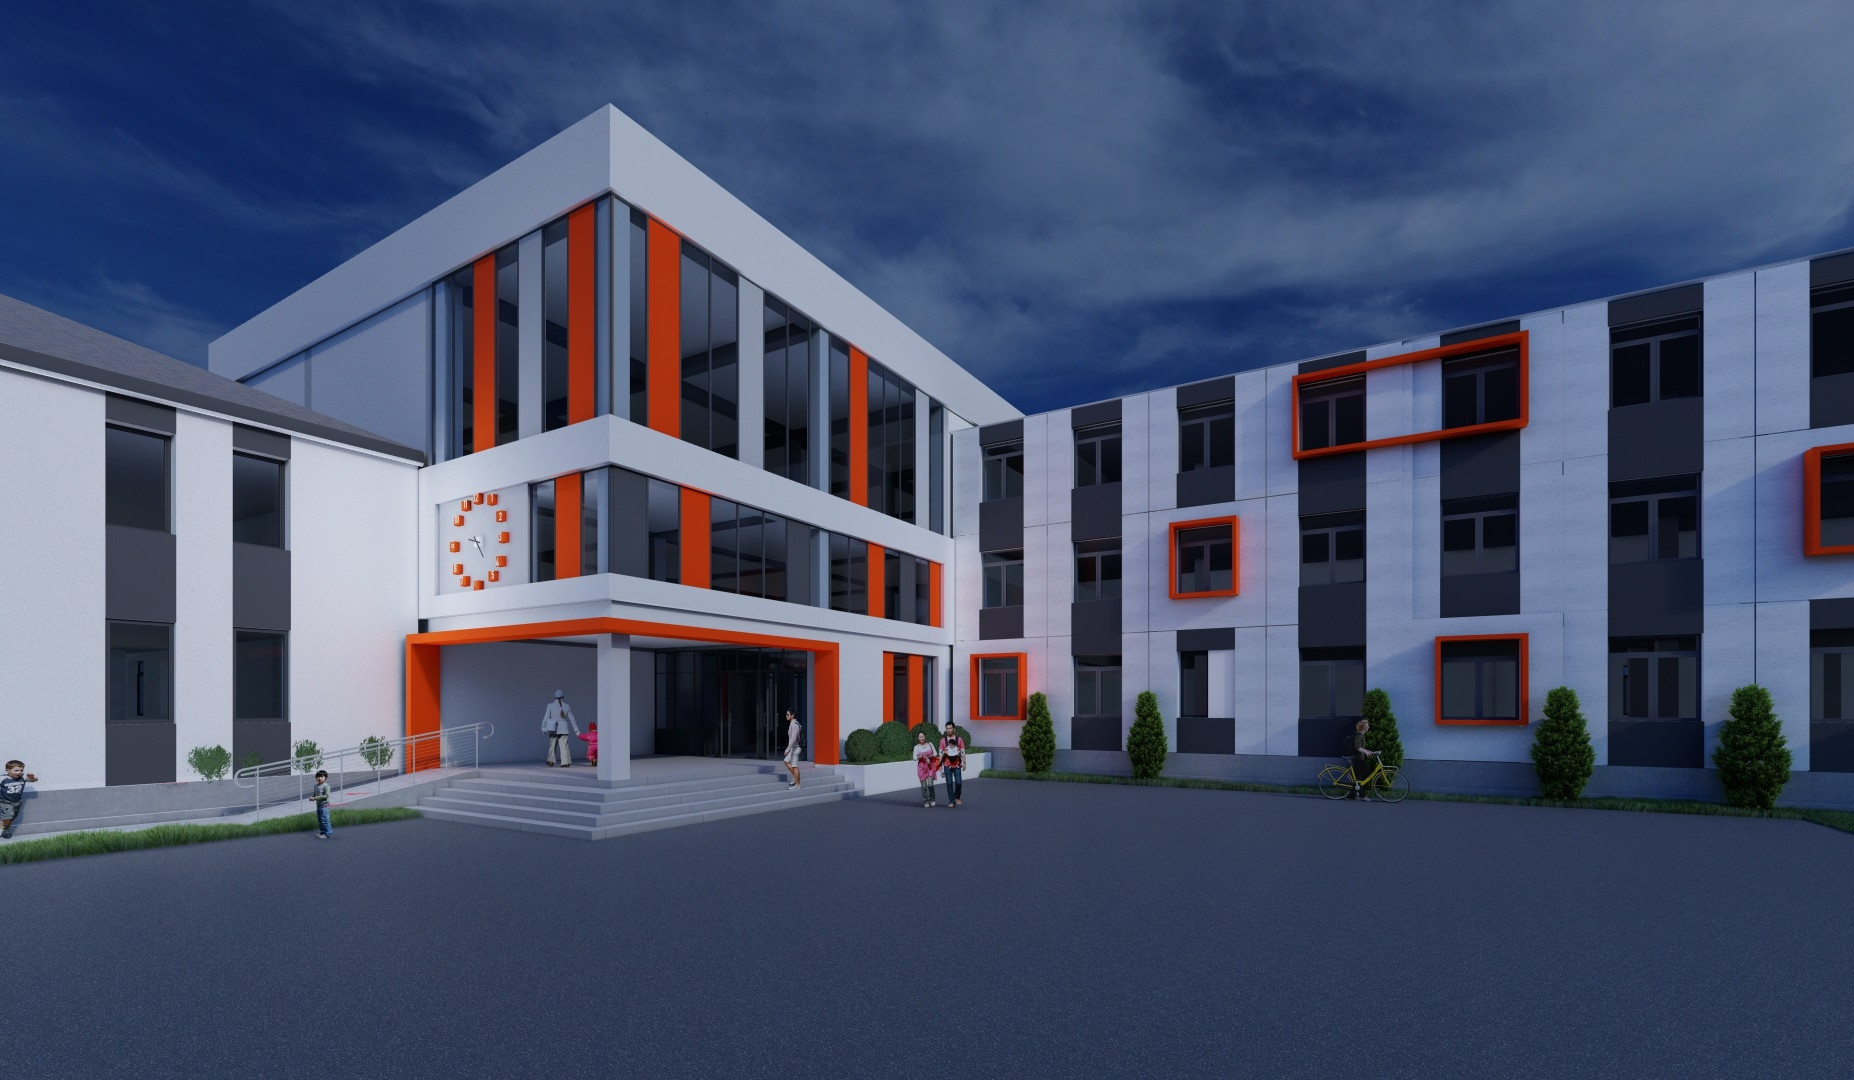 Պետբյուջեի միջոցներով Թալինի Ներքին Սասնաշենի միջնակարգ դպրոցի տարածքում հիմնովին նոր և ժամանակակից դպրոց կկառուցվի